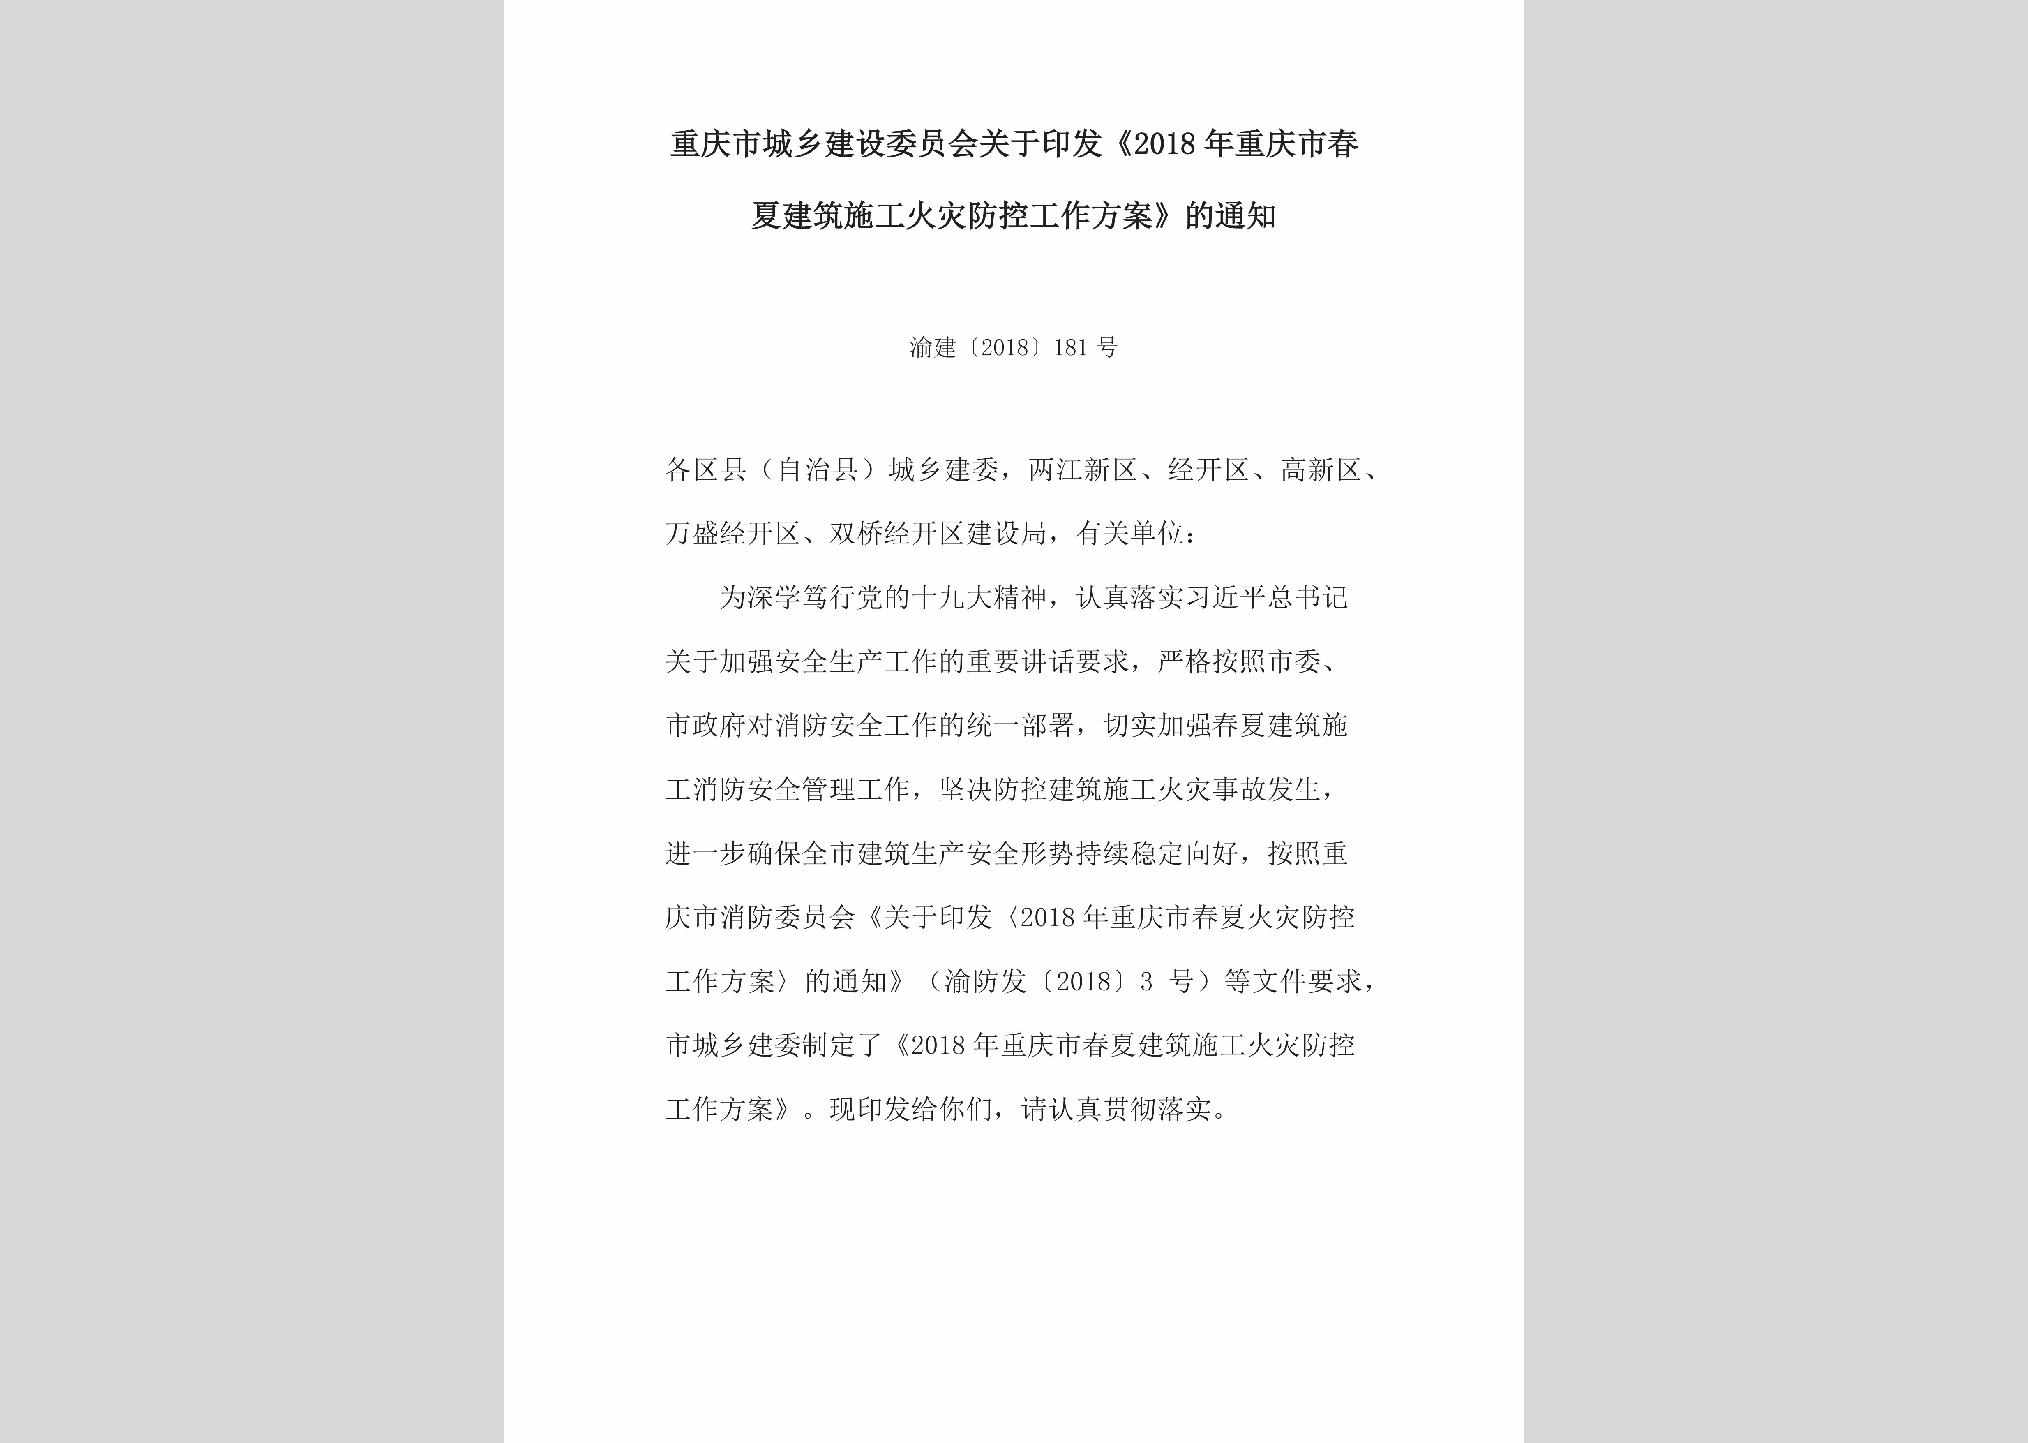 渝建[2018]181号：关于印发《2018年重庆市春夏建筑施工火灾防控工作方案》的通知